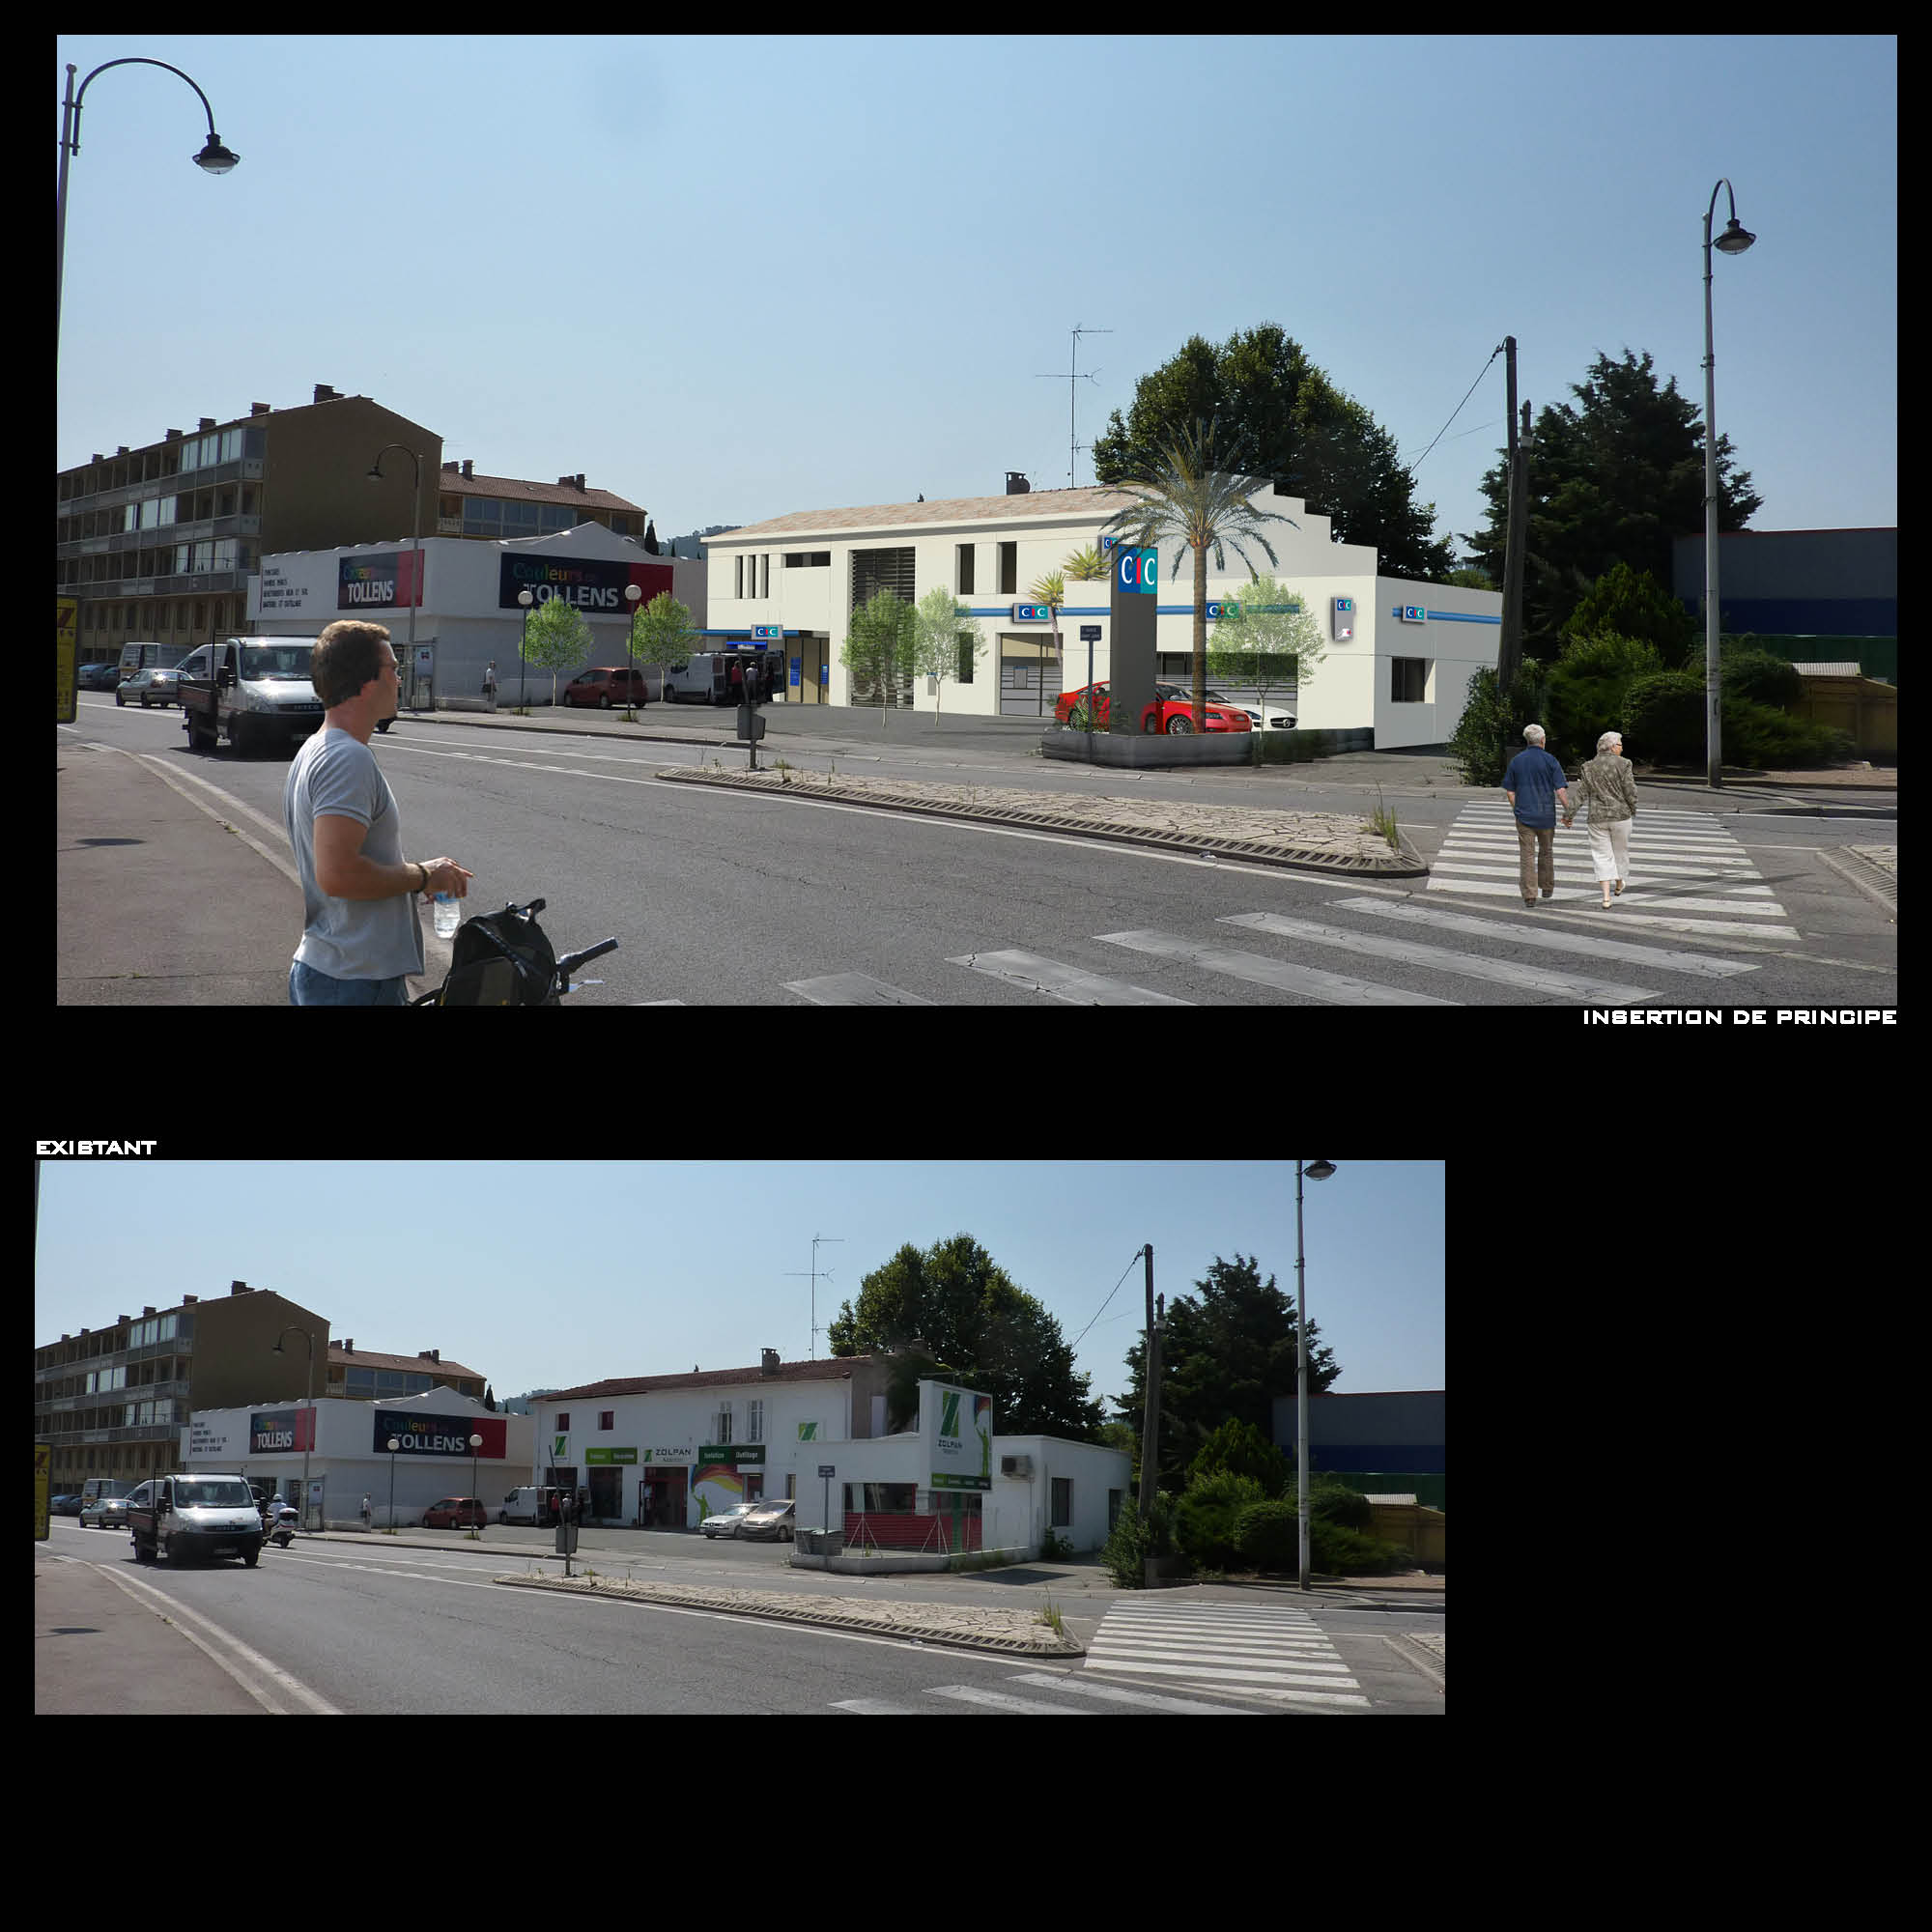 Réaménagement d'un local existant pour création d'une agence bancaire - CIC à Brignoles (83)